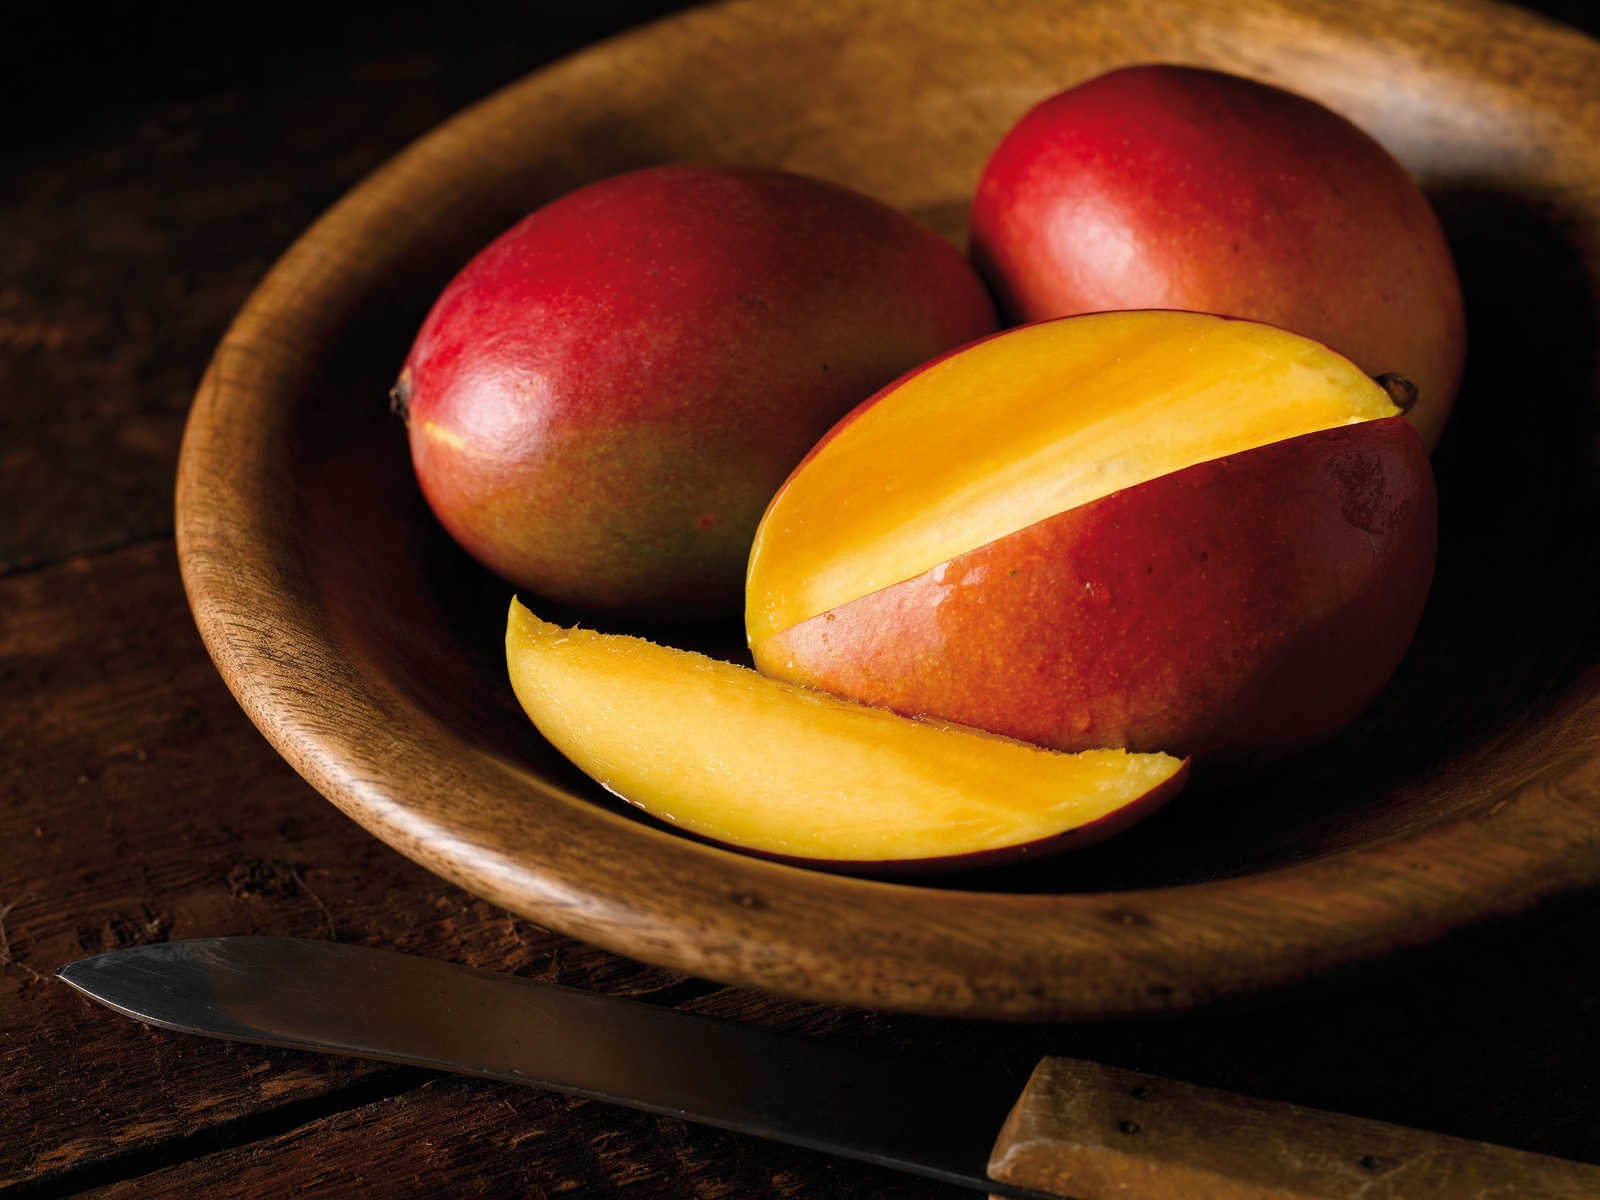             Mango Papaya Duftkerze mit fruchtigen Duft – 110g
        